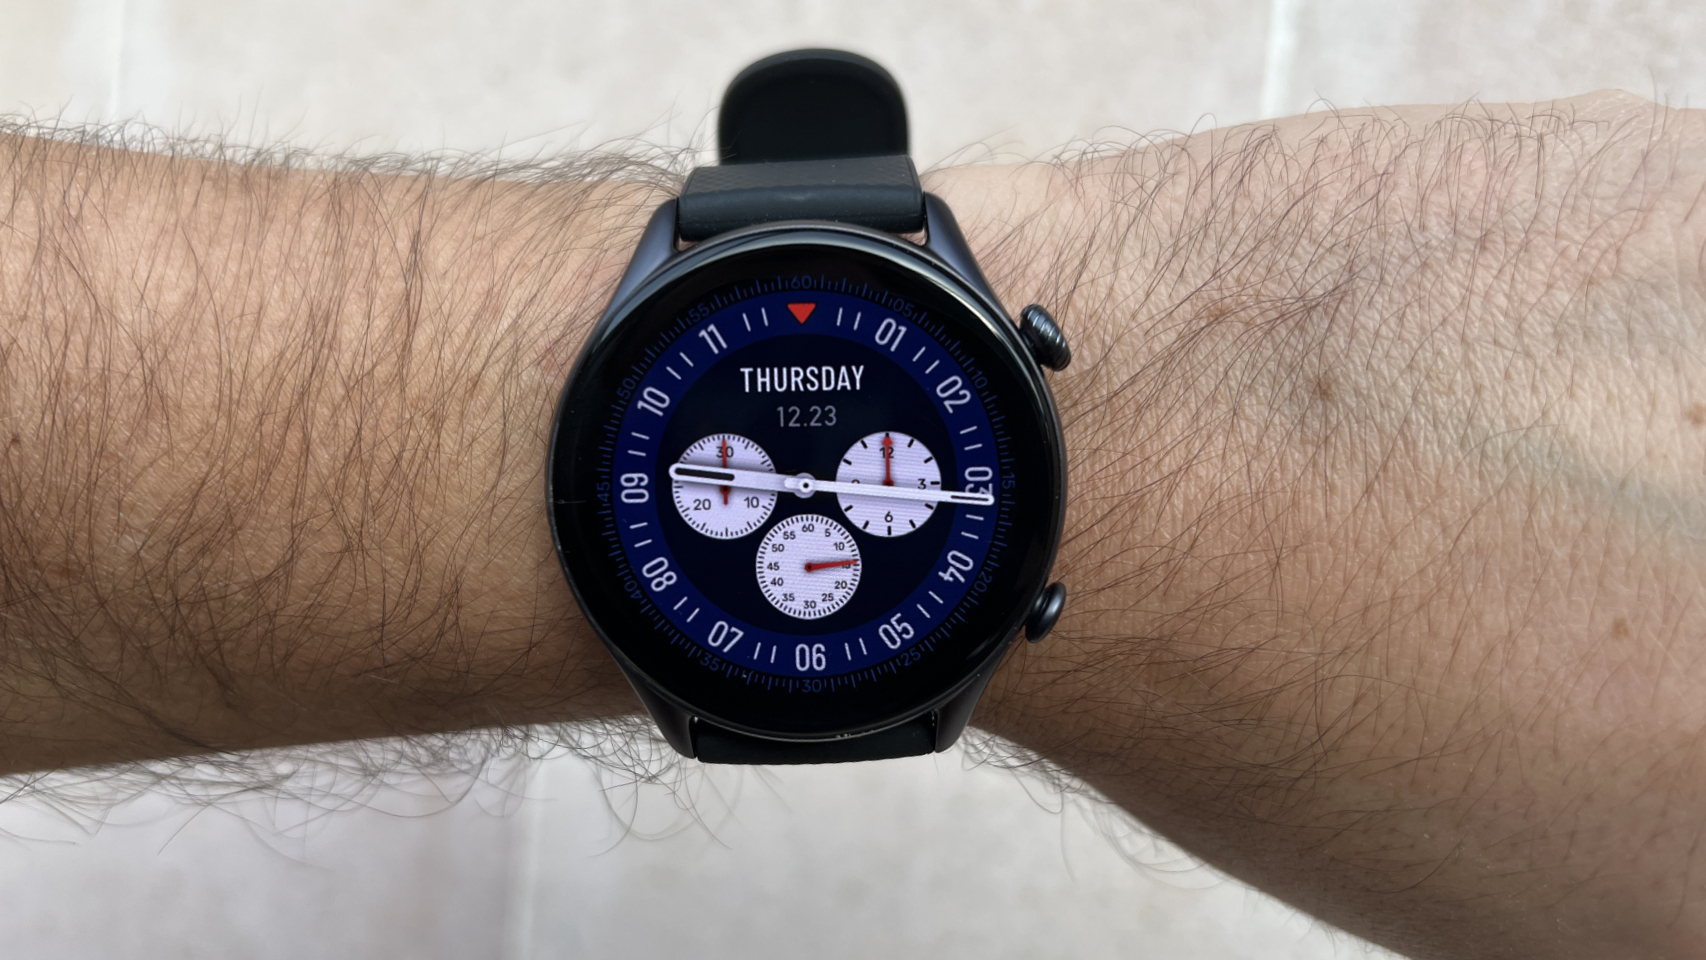 Probamos el Amazfit GTR 3 Pro, el reloj inteligente barato que recomendarás  esta Navidad